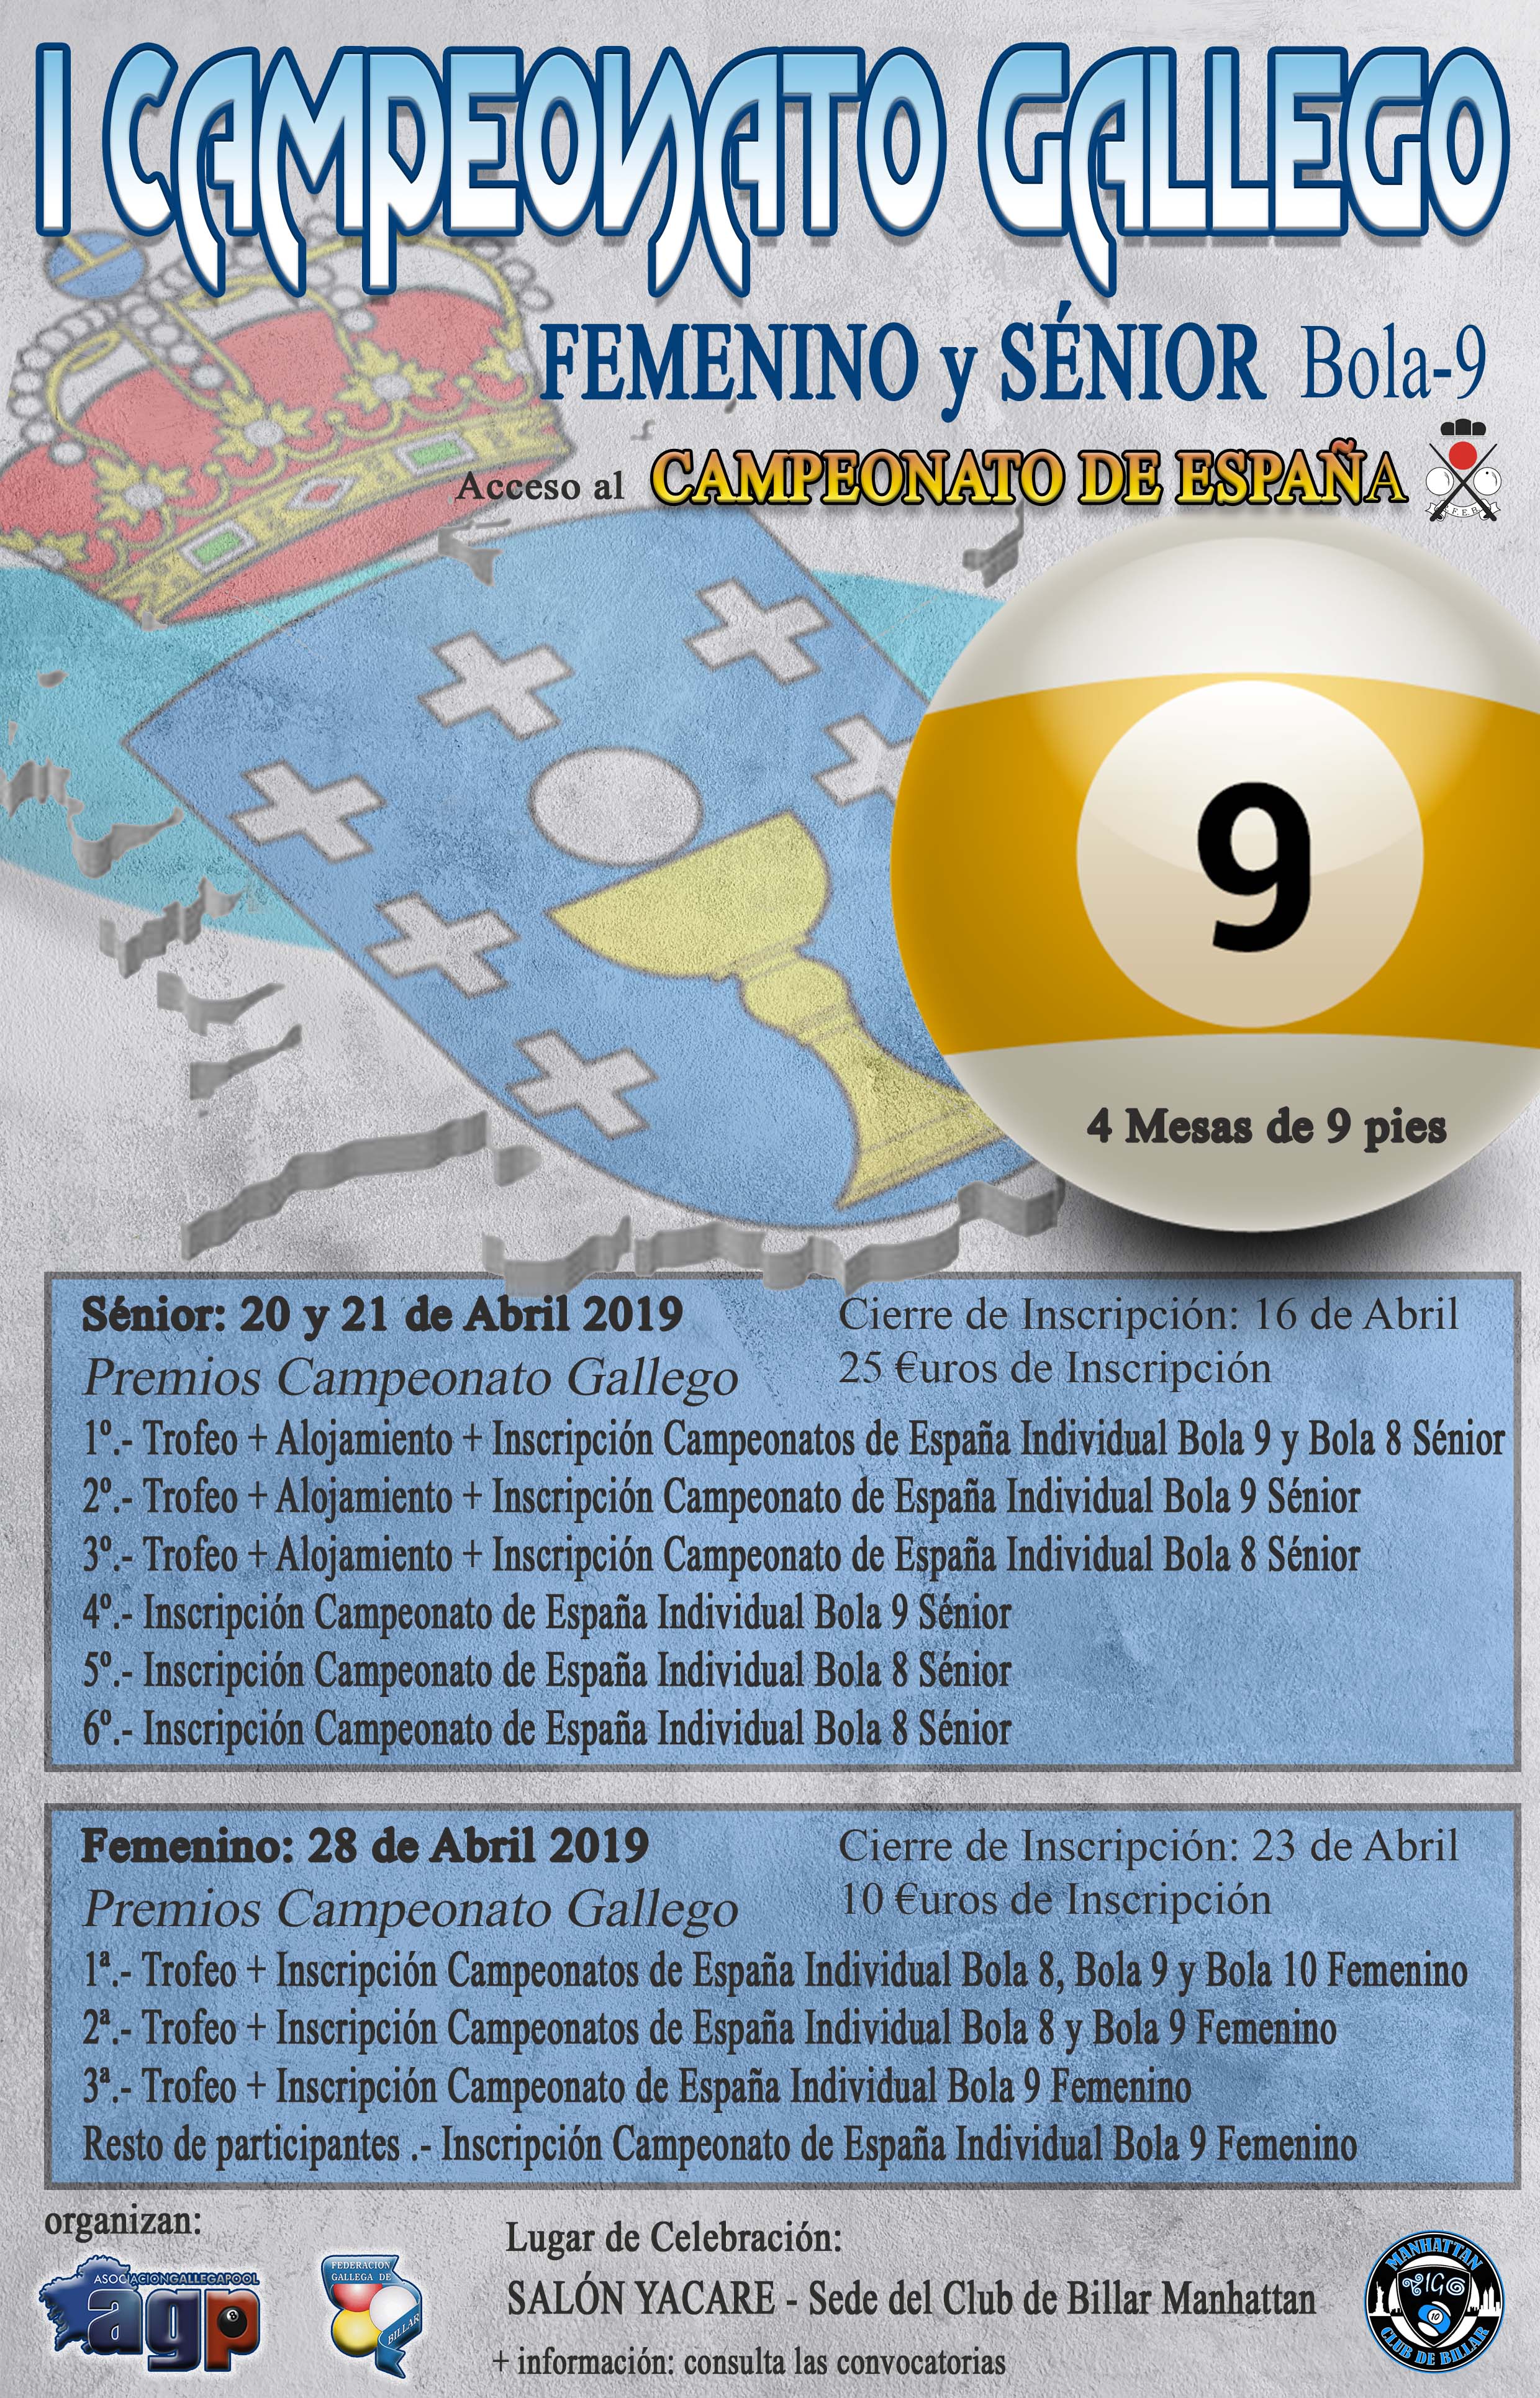 Campeonato Gallego Snior y Femenino Bola-9